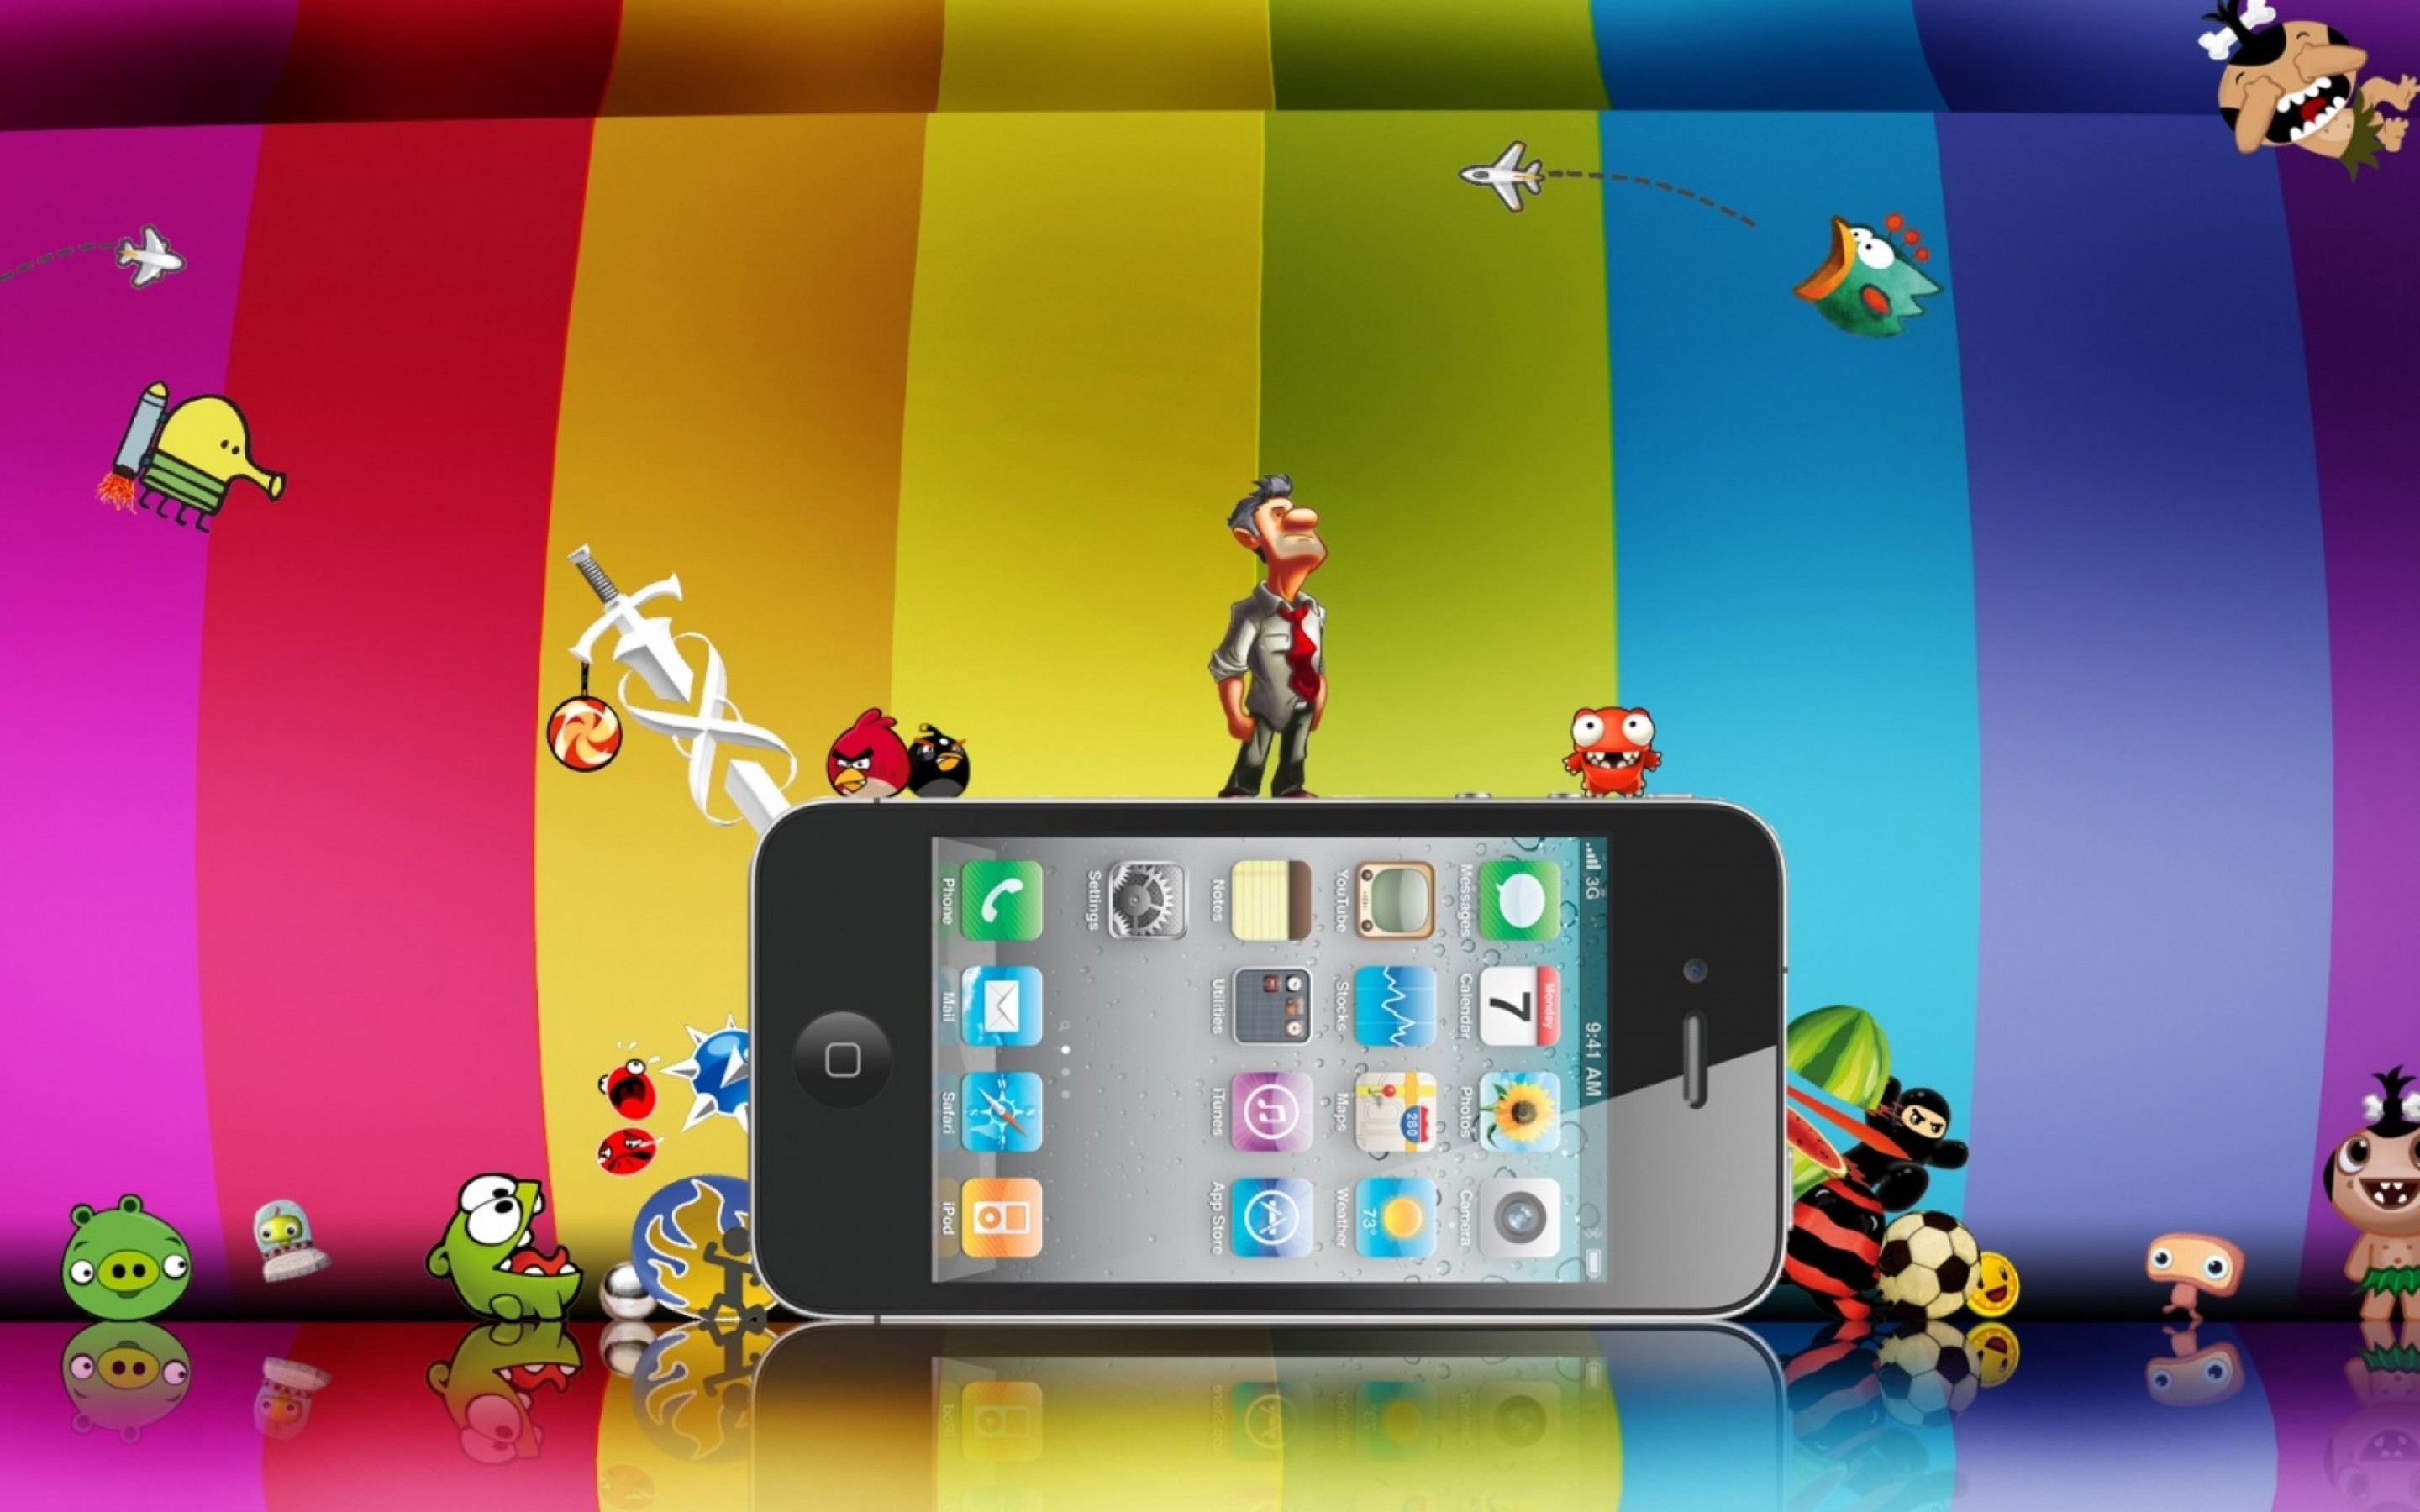 Iphone games download. Игровой айфон. Обои для IPAD. Игры на айфон. Обои для IPAD детские.